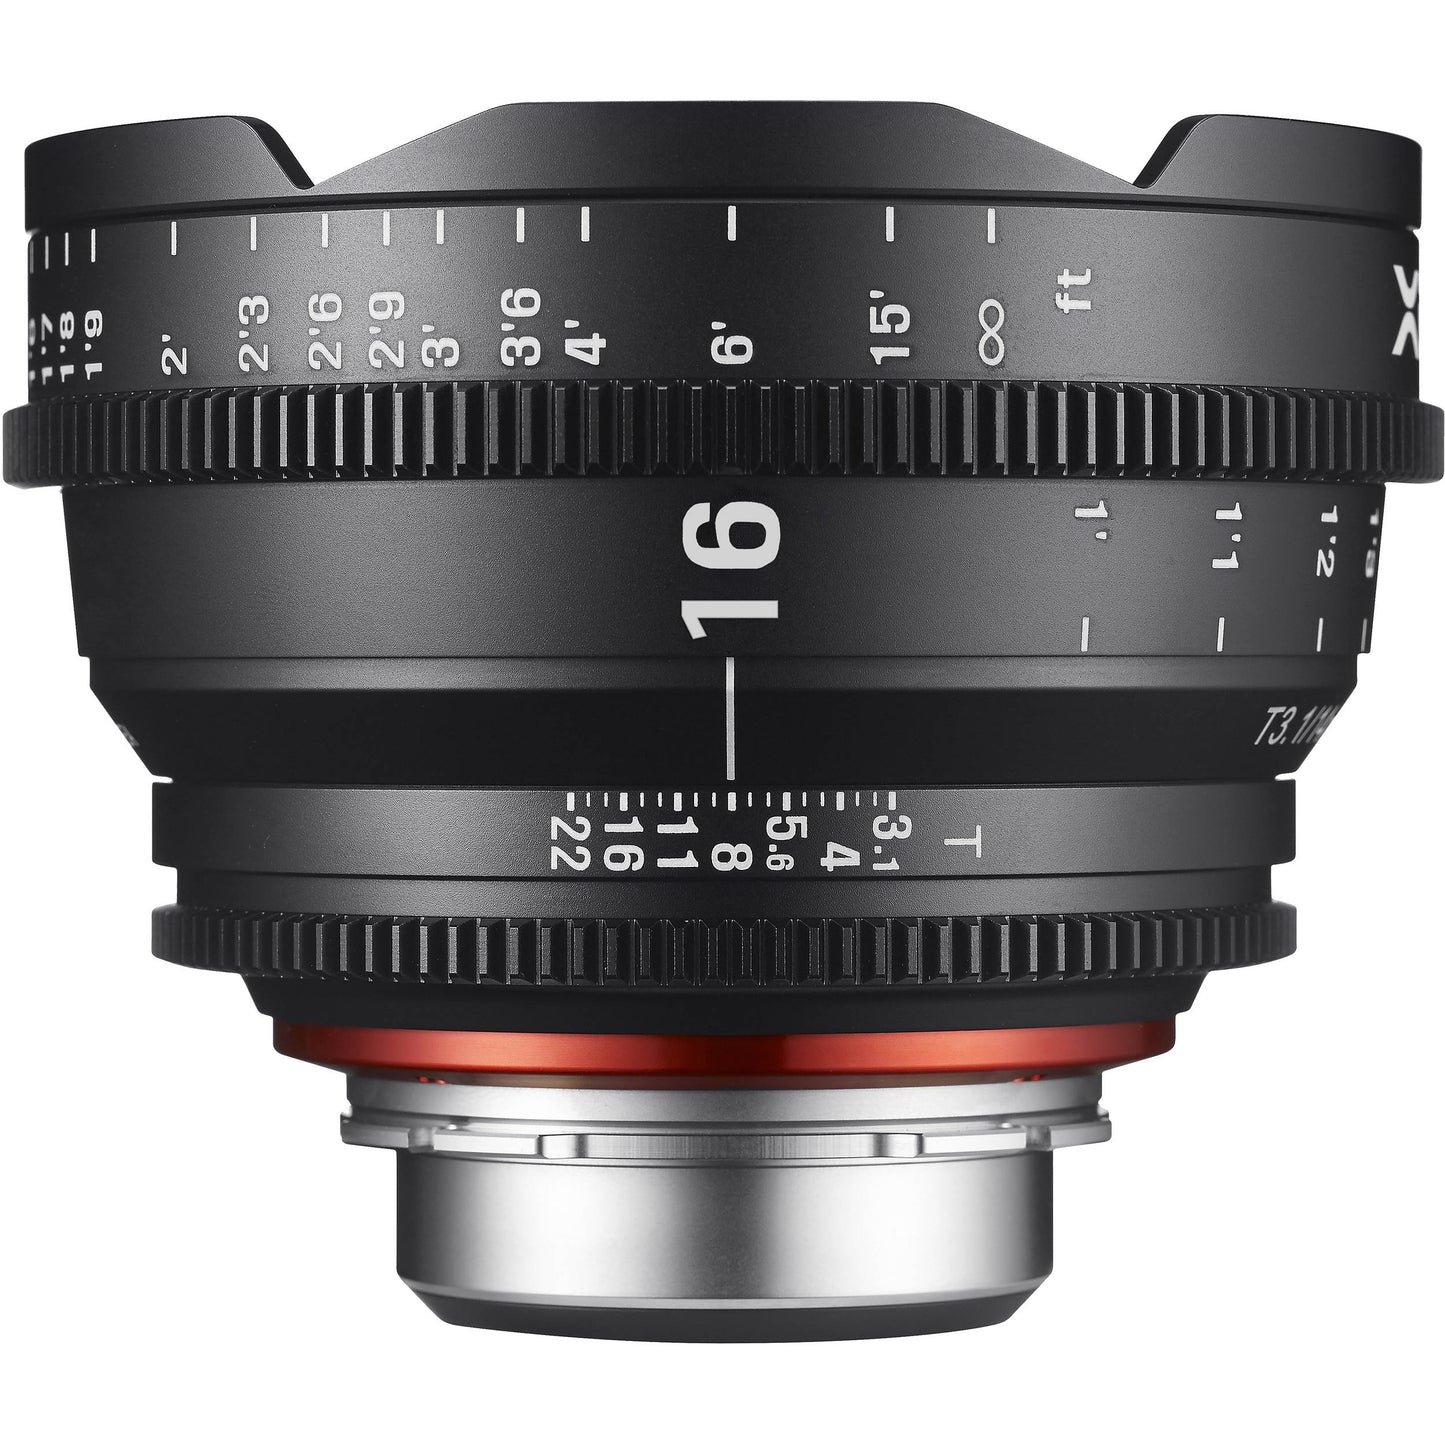 Samyang Xeen 16mm T2.6 Cine Lens (Canon EF Mount) for Canon DSLR Camera Full Frame Prime Lenses for Professional Cinema Videography